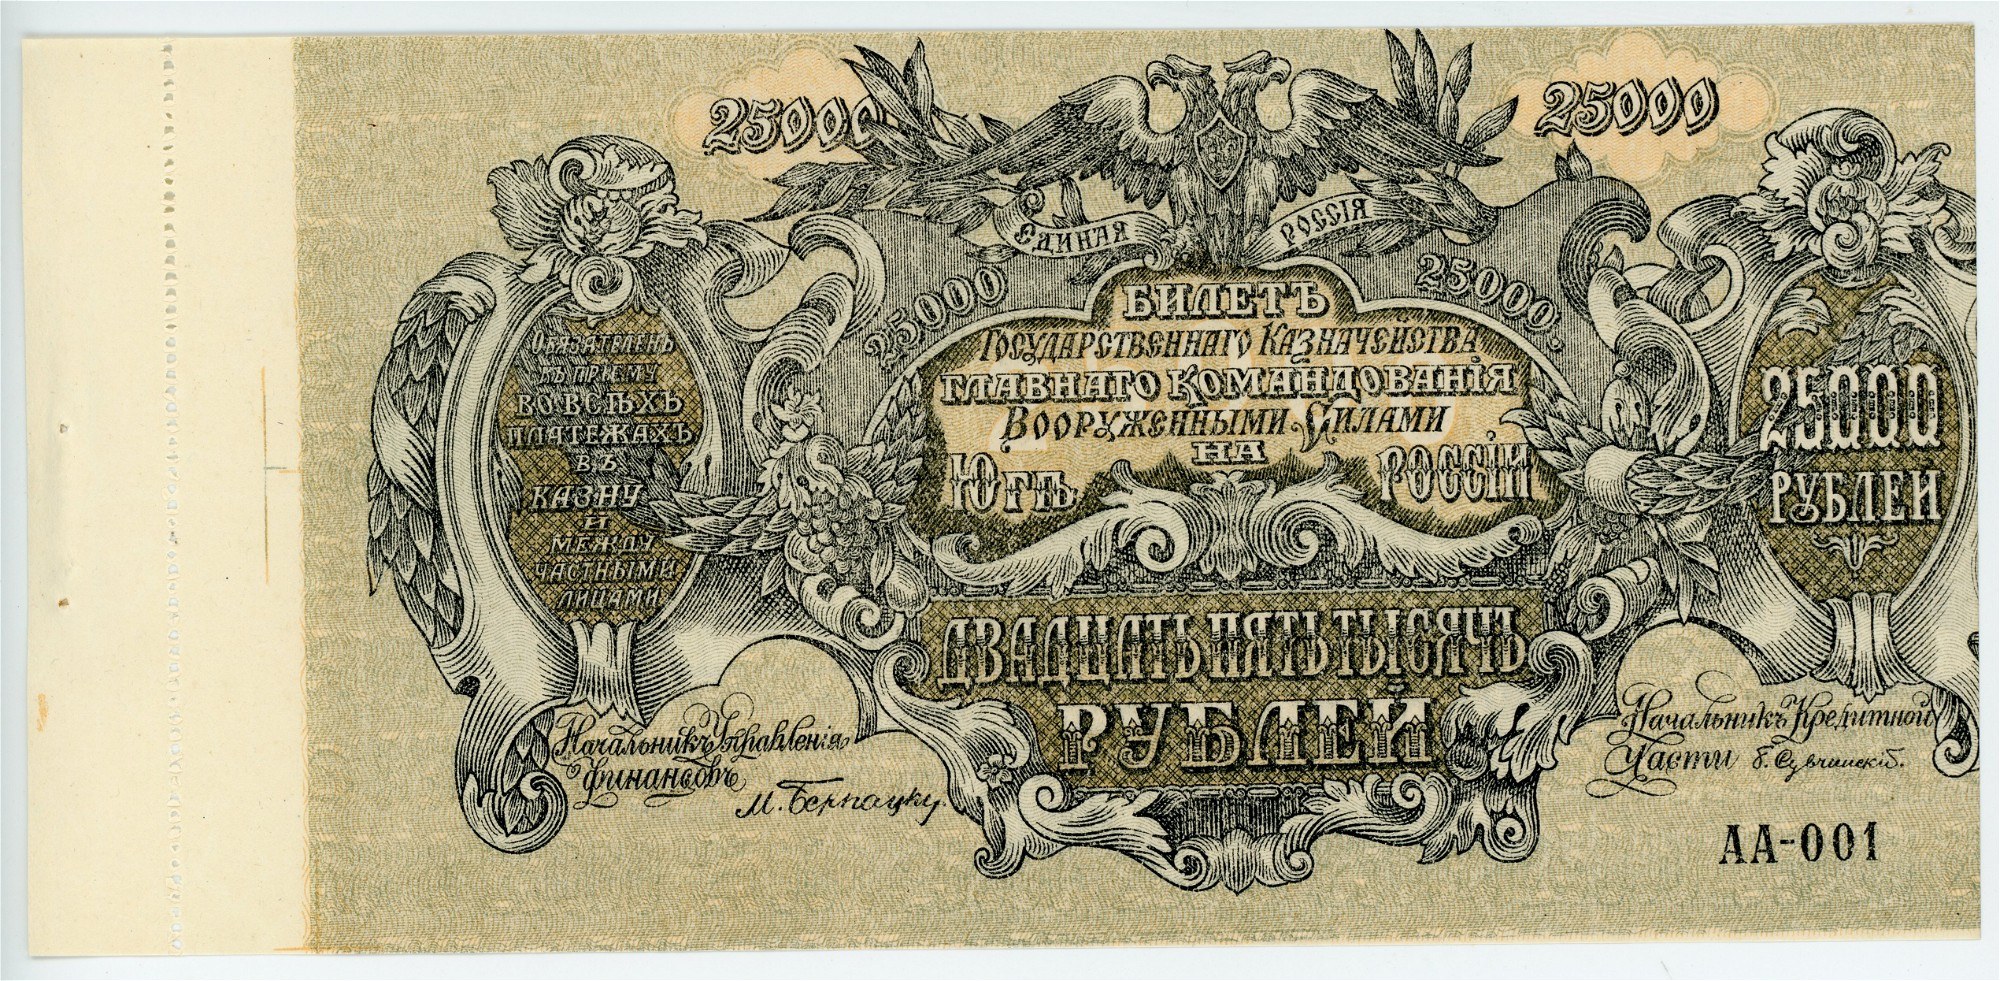 25000 Рублей купюра. Казначейский билет Англии 20 века.